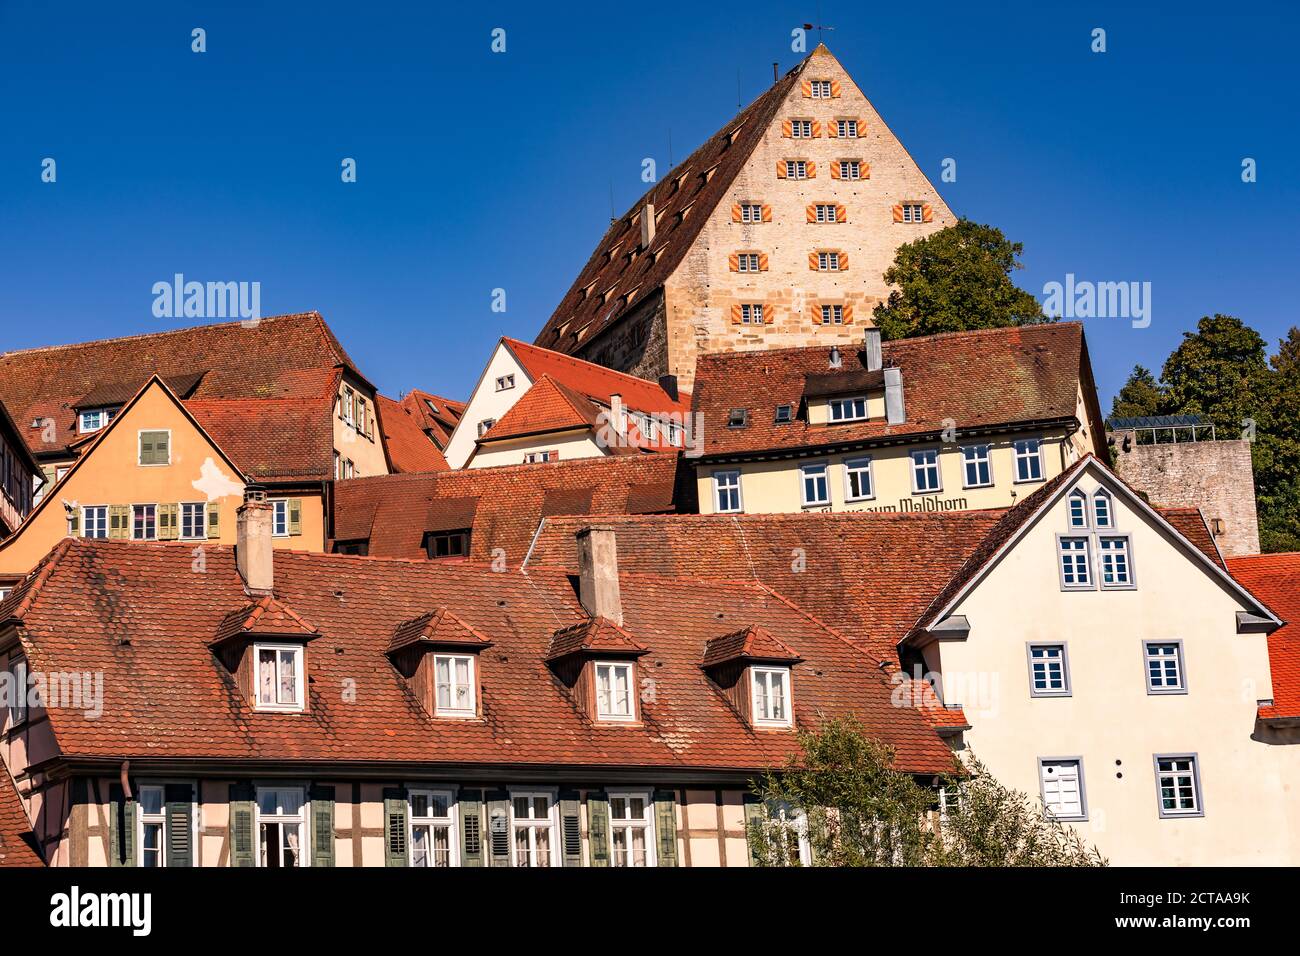 Un grand nombre de maisons à colombages comme le Kornspeicher ont A été conservé dans la vieille ville historique de Schwaebisch Hall Dans le sud de l'Allemagne Banque D'Images